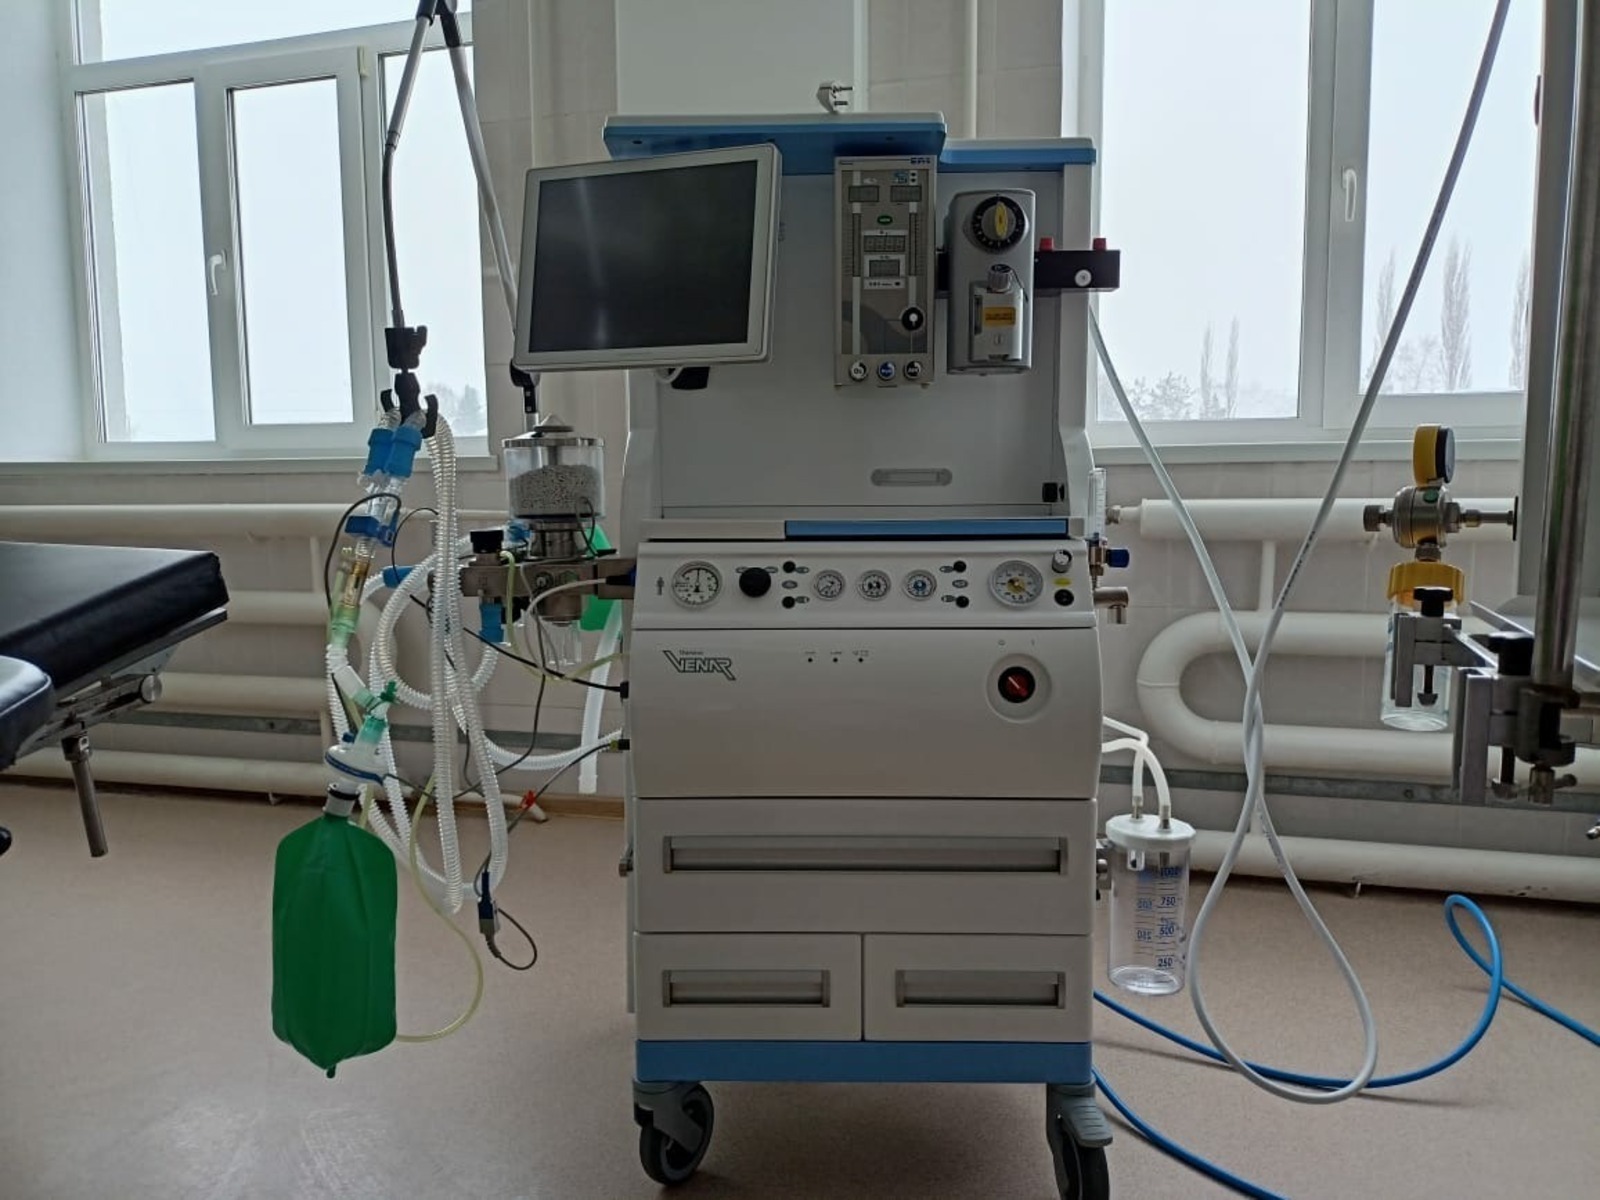 Больницы Башкирии получили наркозно-дыхательные аппараты общей стоимостью более 67 млн рублей